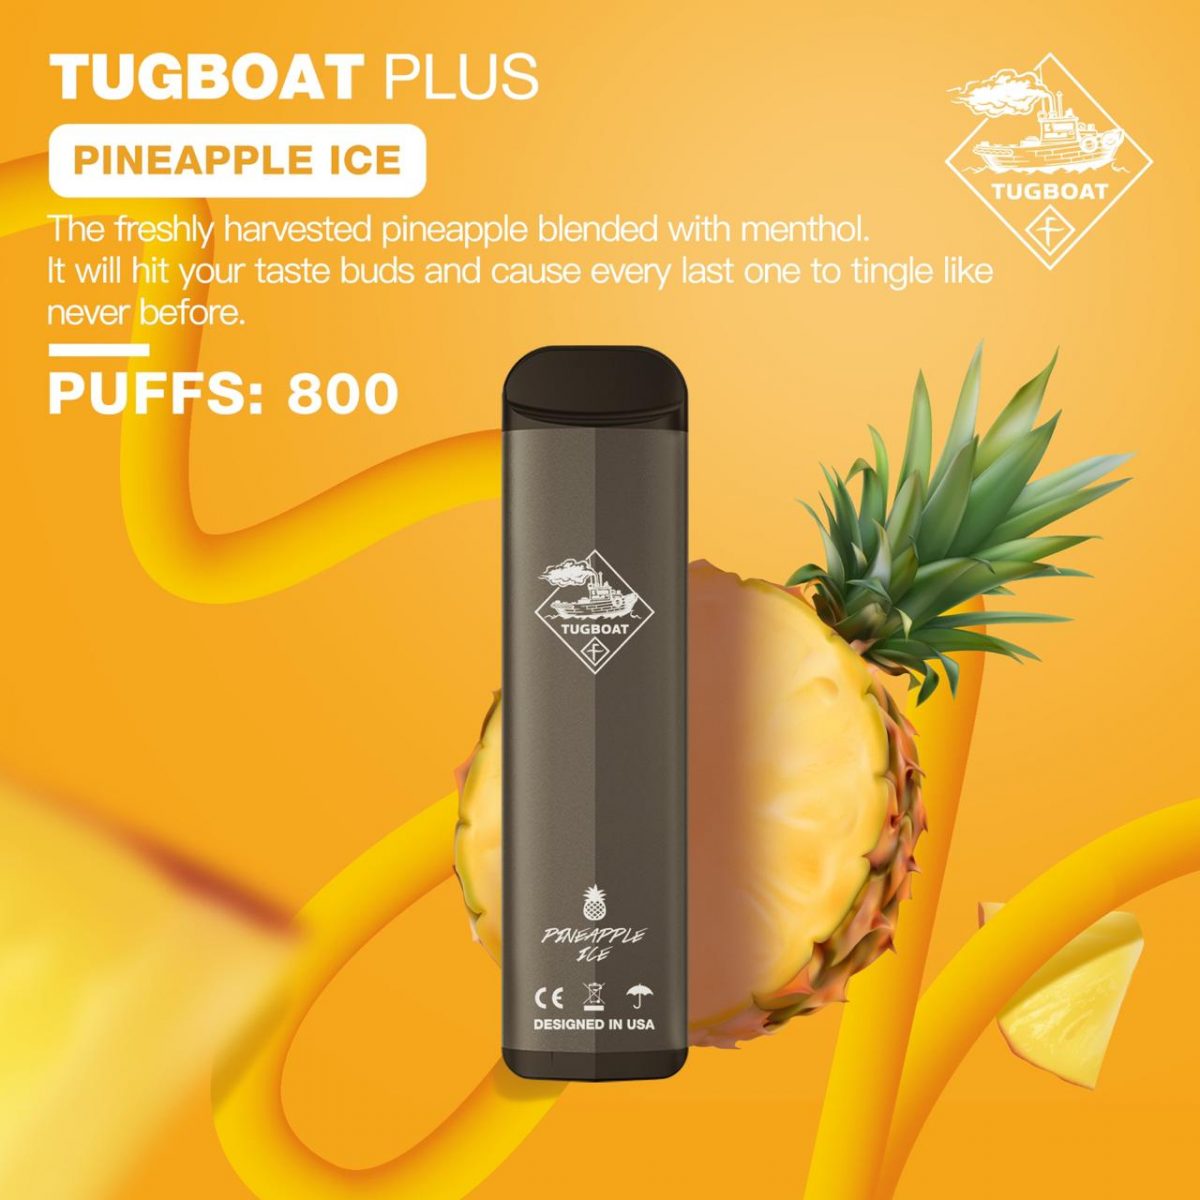 Tugboat Plus Pineapple Ice